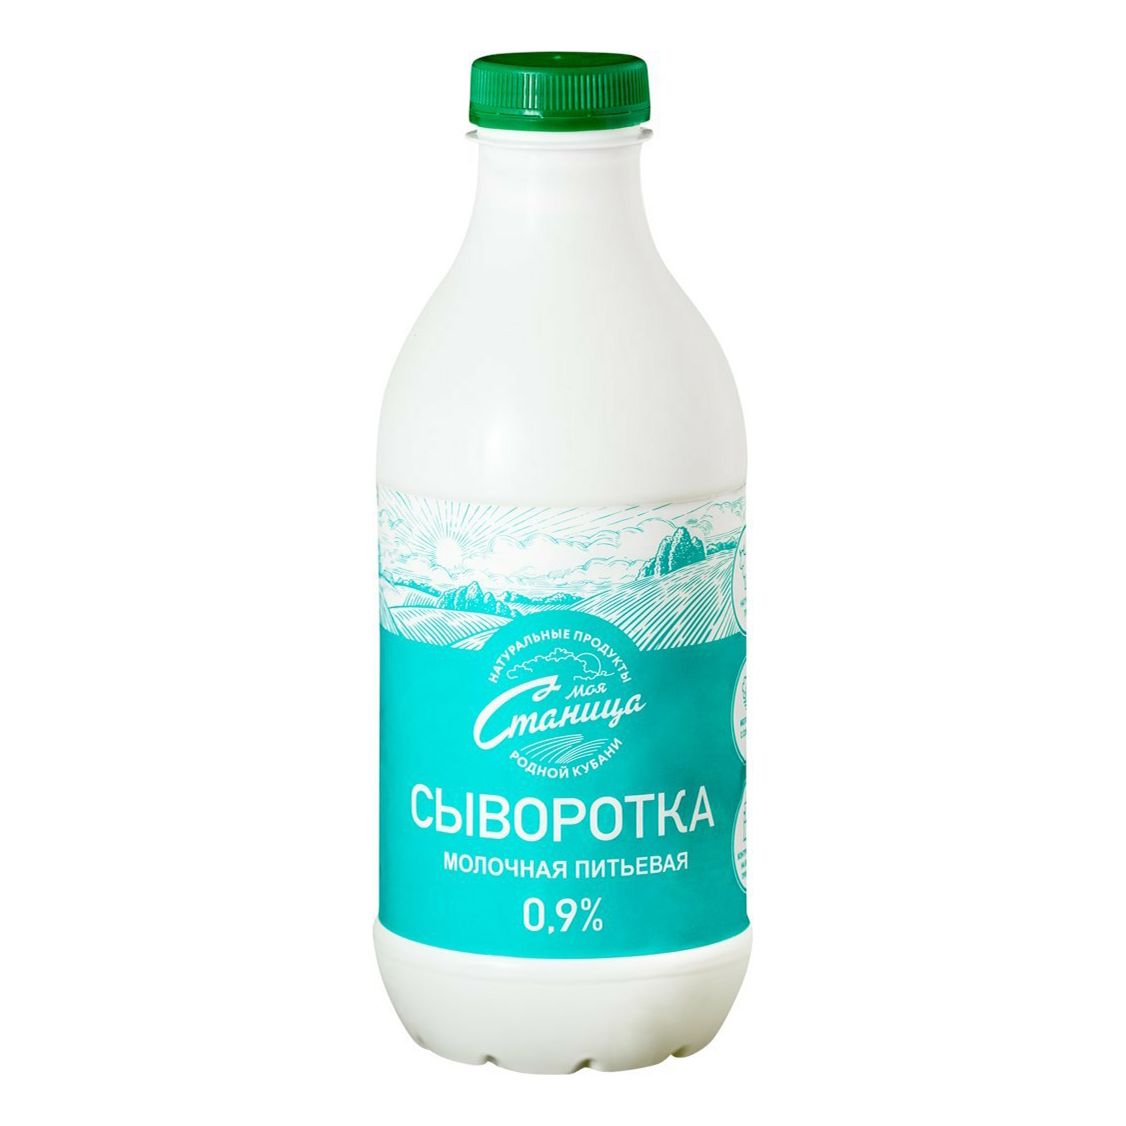 Молочная сыворотка можно в пост. Сыворотка молочная питьевая. Сыворотка молочная магазинная. РЯЖЕНКА 3.2 %900Г. ПЭ. Сыворотка молочная в бутылке.